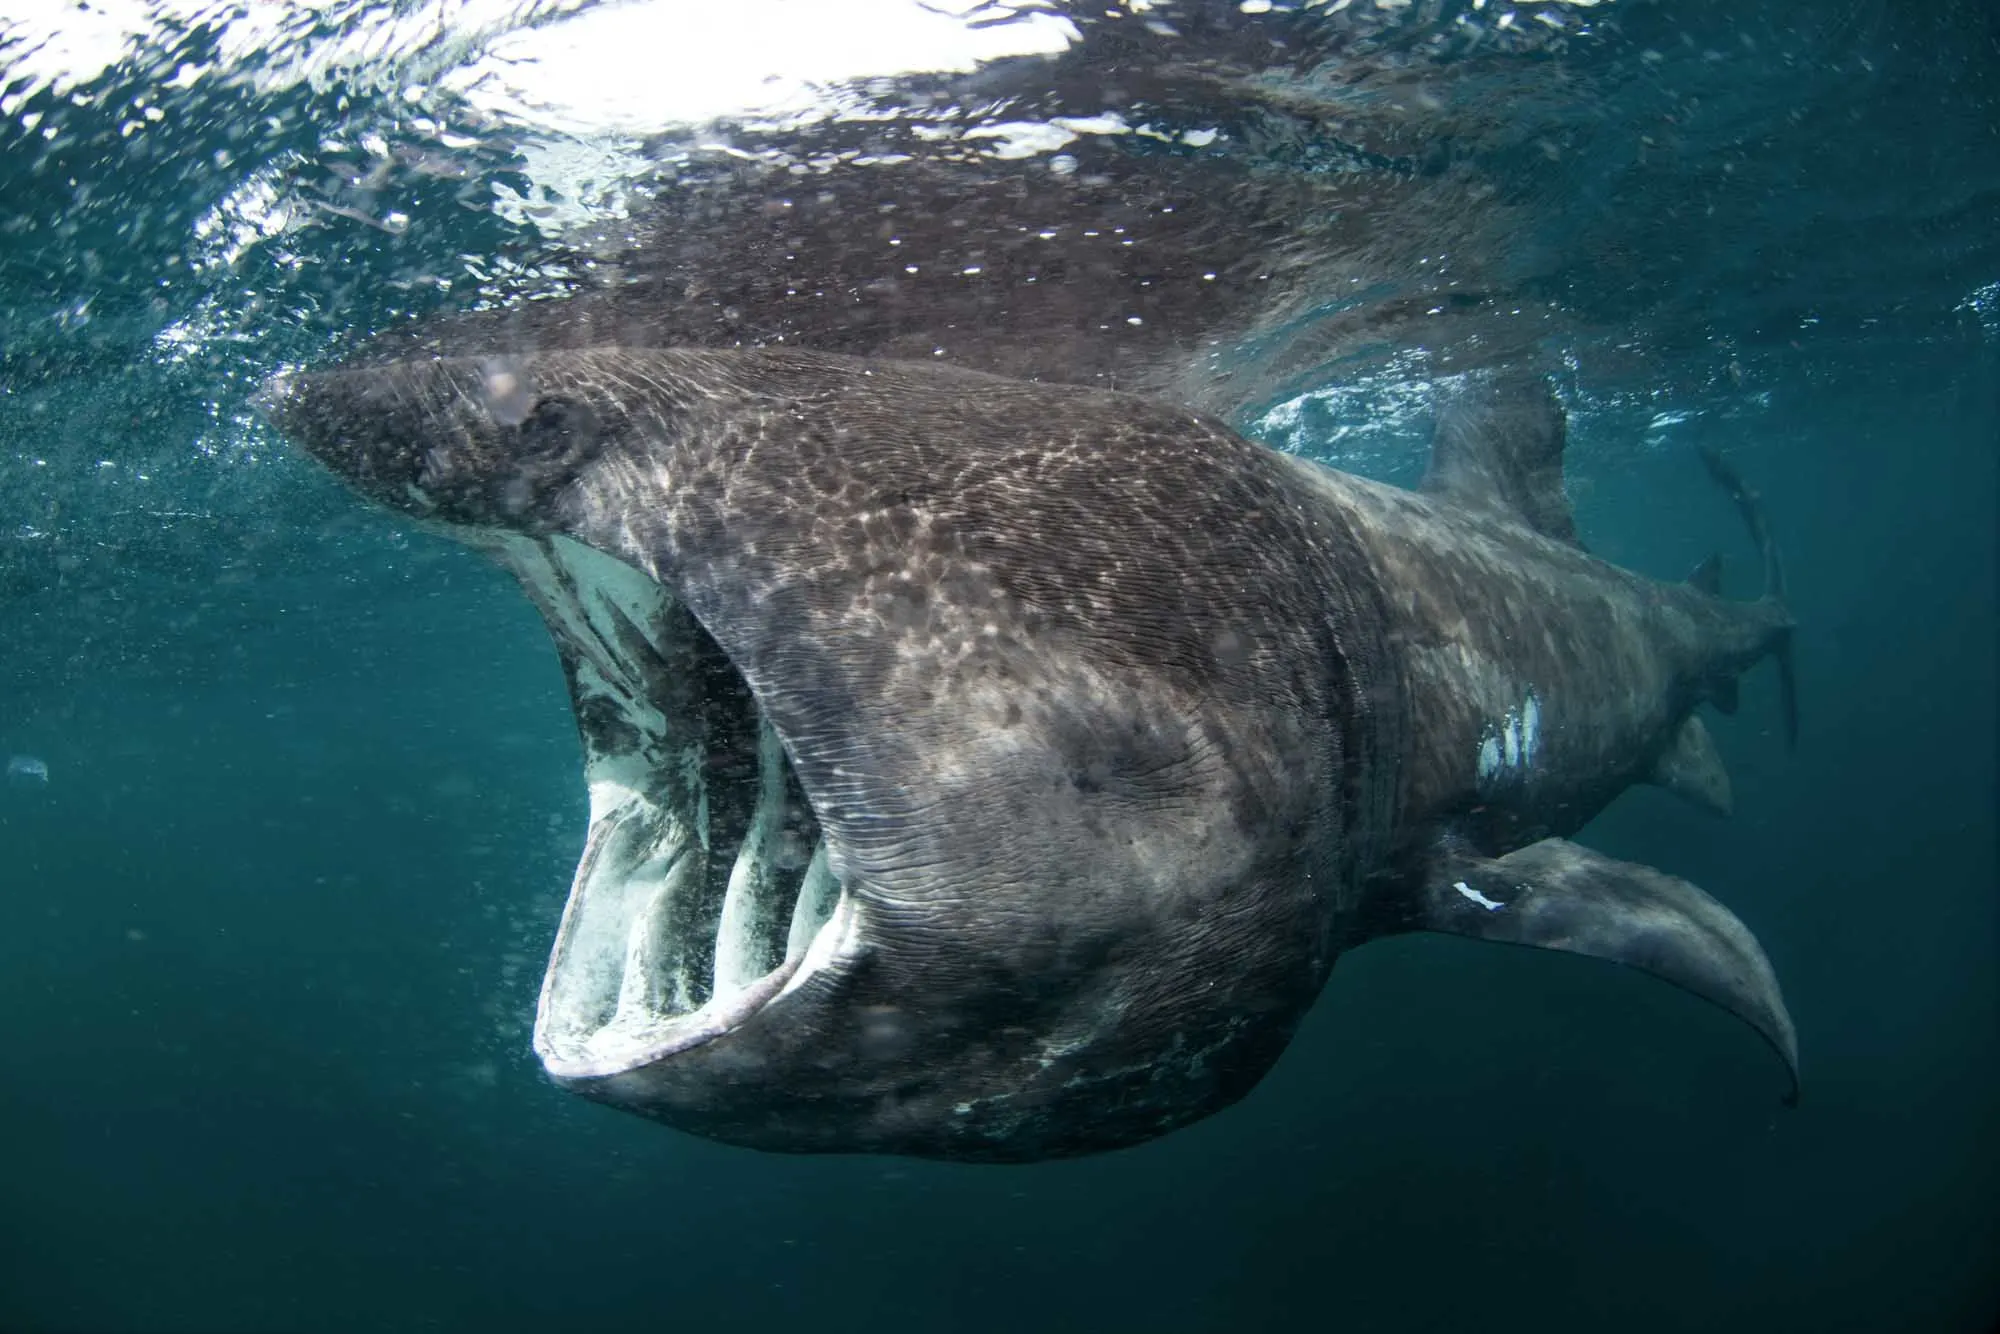 Basking shark eating in the ocean